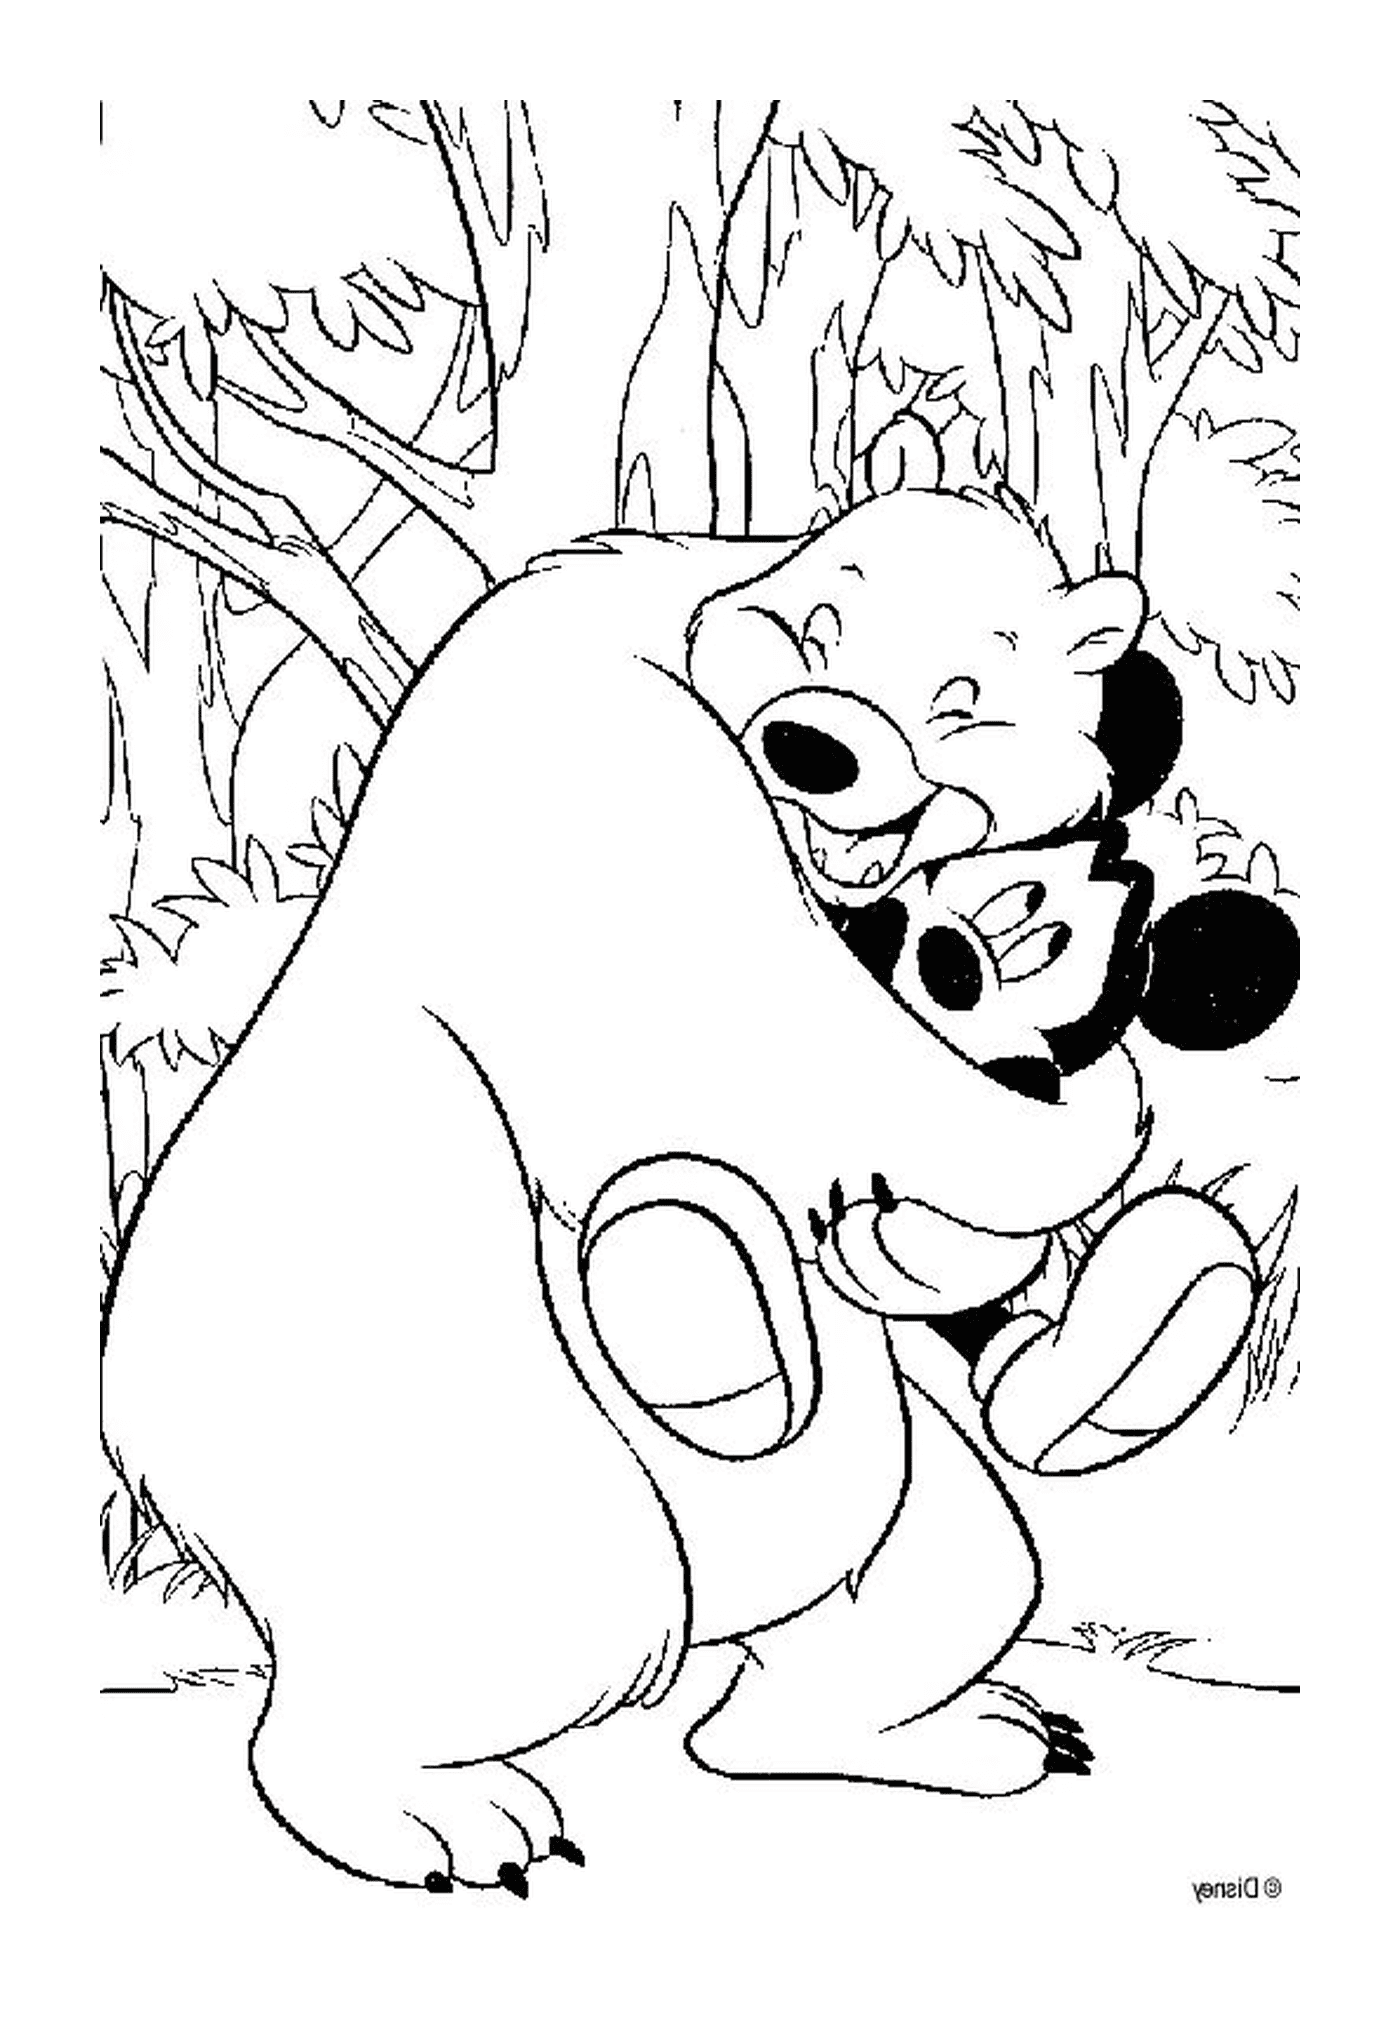  एक भालू मिकी माउस अपनी बाहों में रखता है 